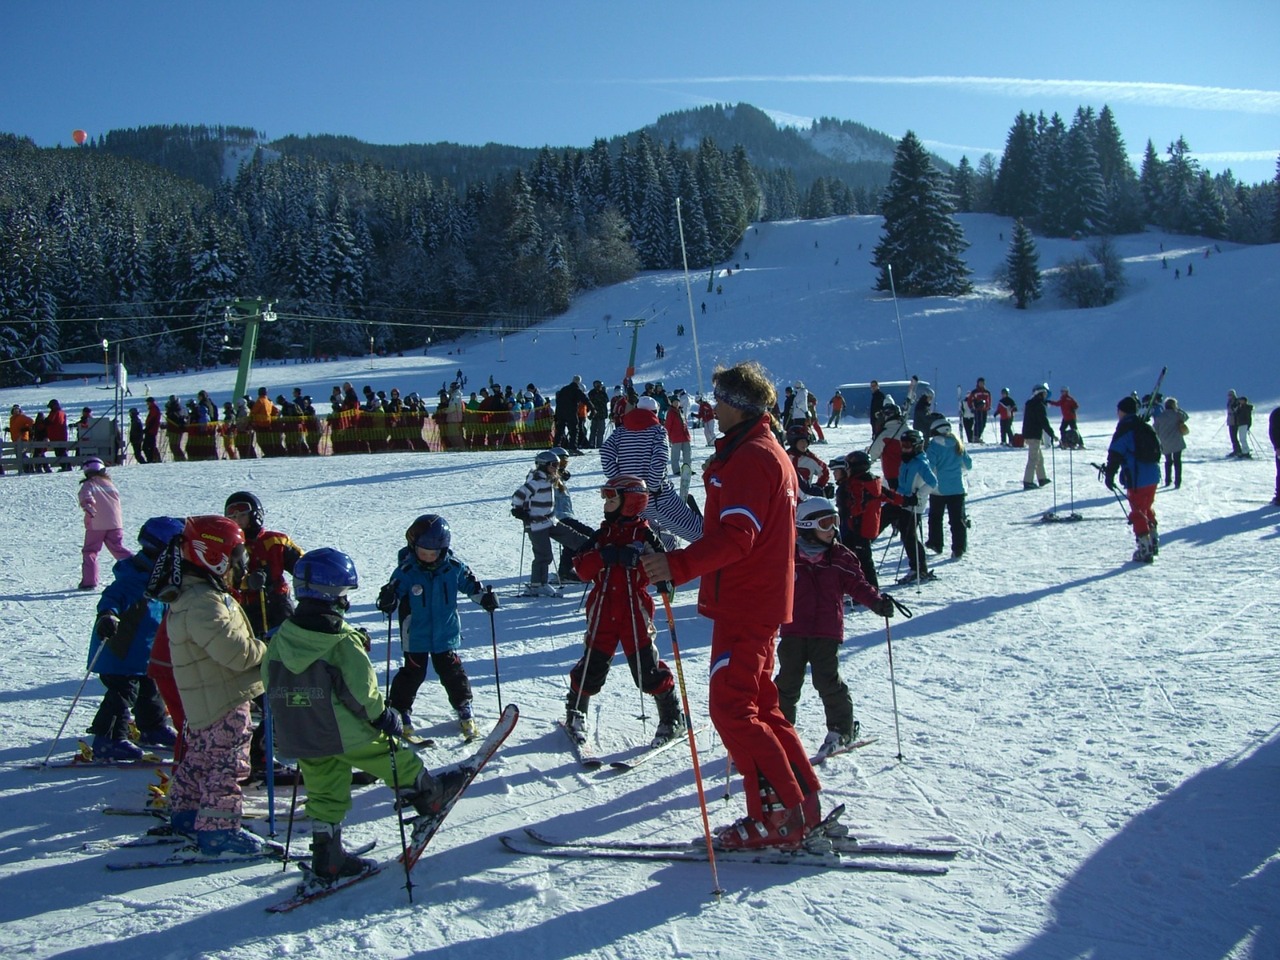 ski lessons children's ski course ski instructors free photo